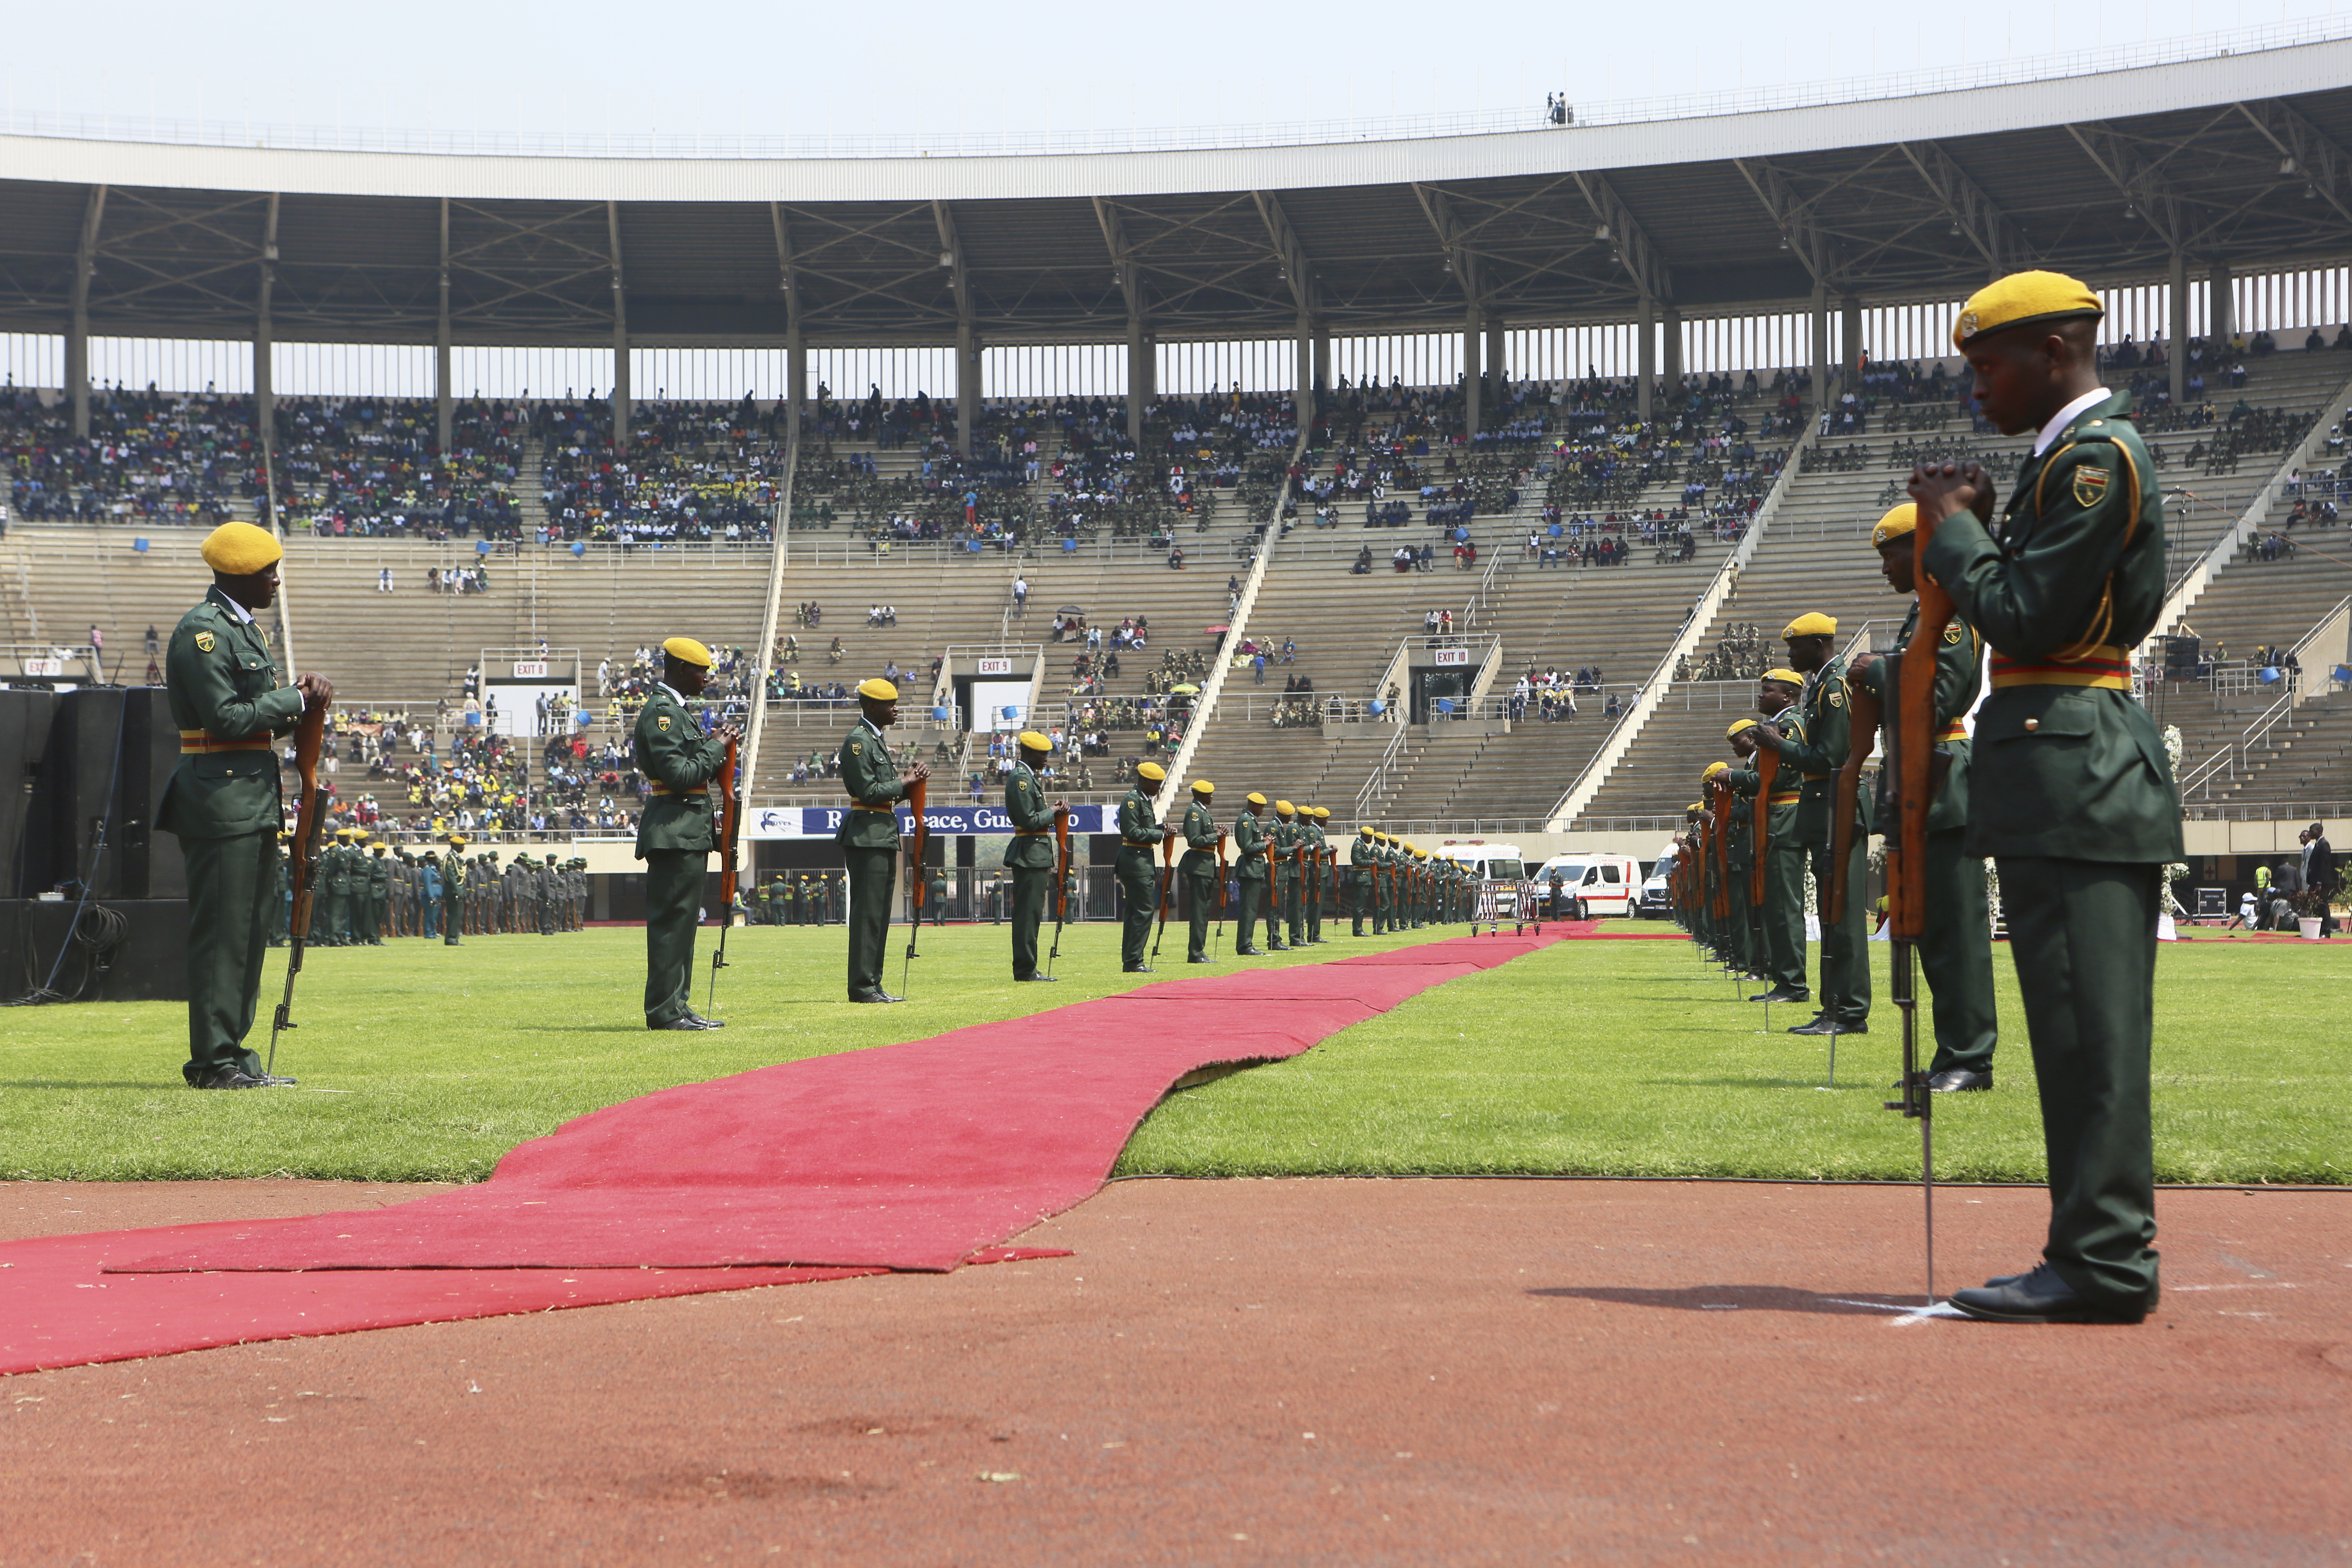 Tátongóan üres maradt a stadion, ahol Robert Mugabét felravatalozták